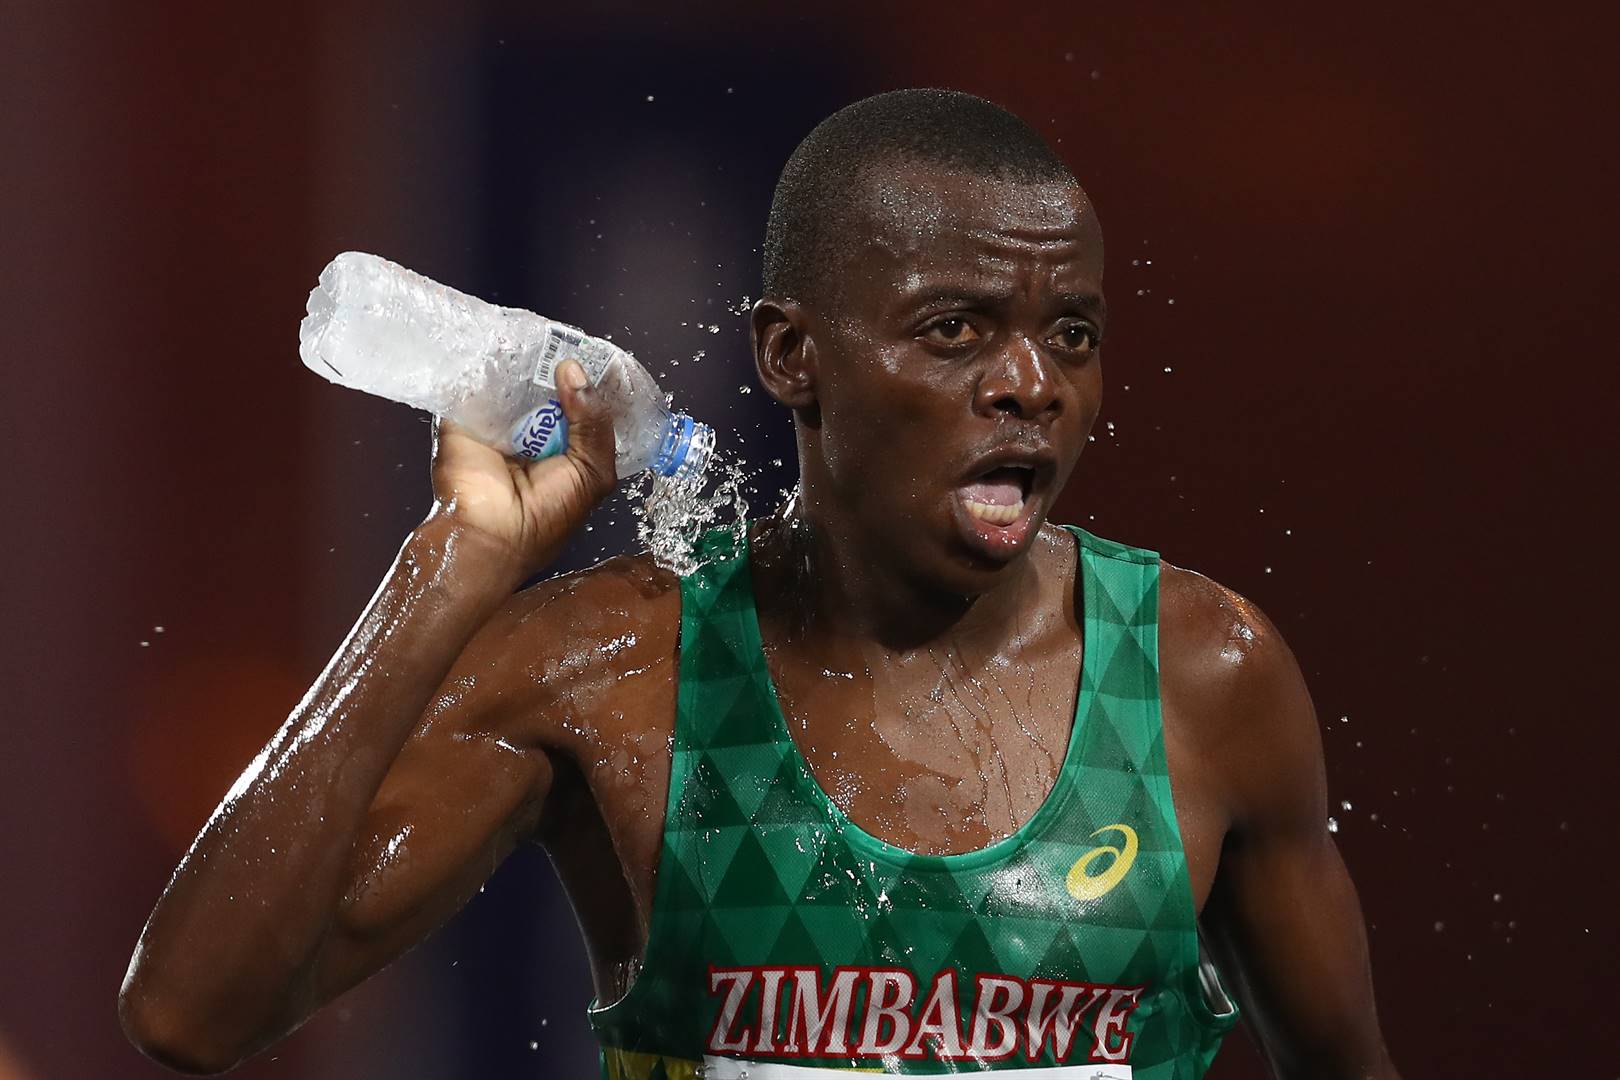 Die Zimbabwiese atleet Isaac Mpofu is in ’n stryd met Atletiek Suid-Afrika gewikkel nadat hy as wenner van die Durbanse stadsmarathon gediskwalifiseer is. Foto: Getty Images